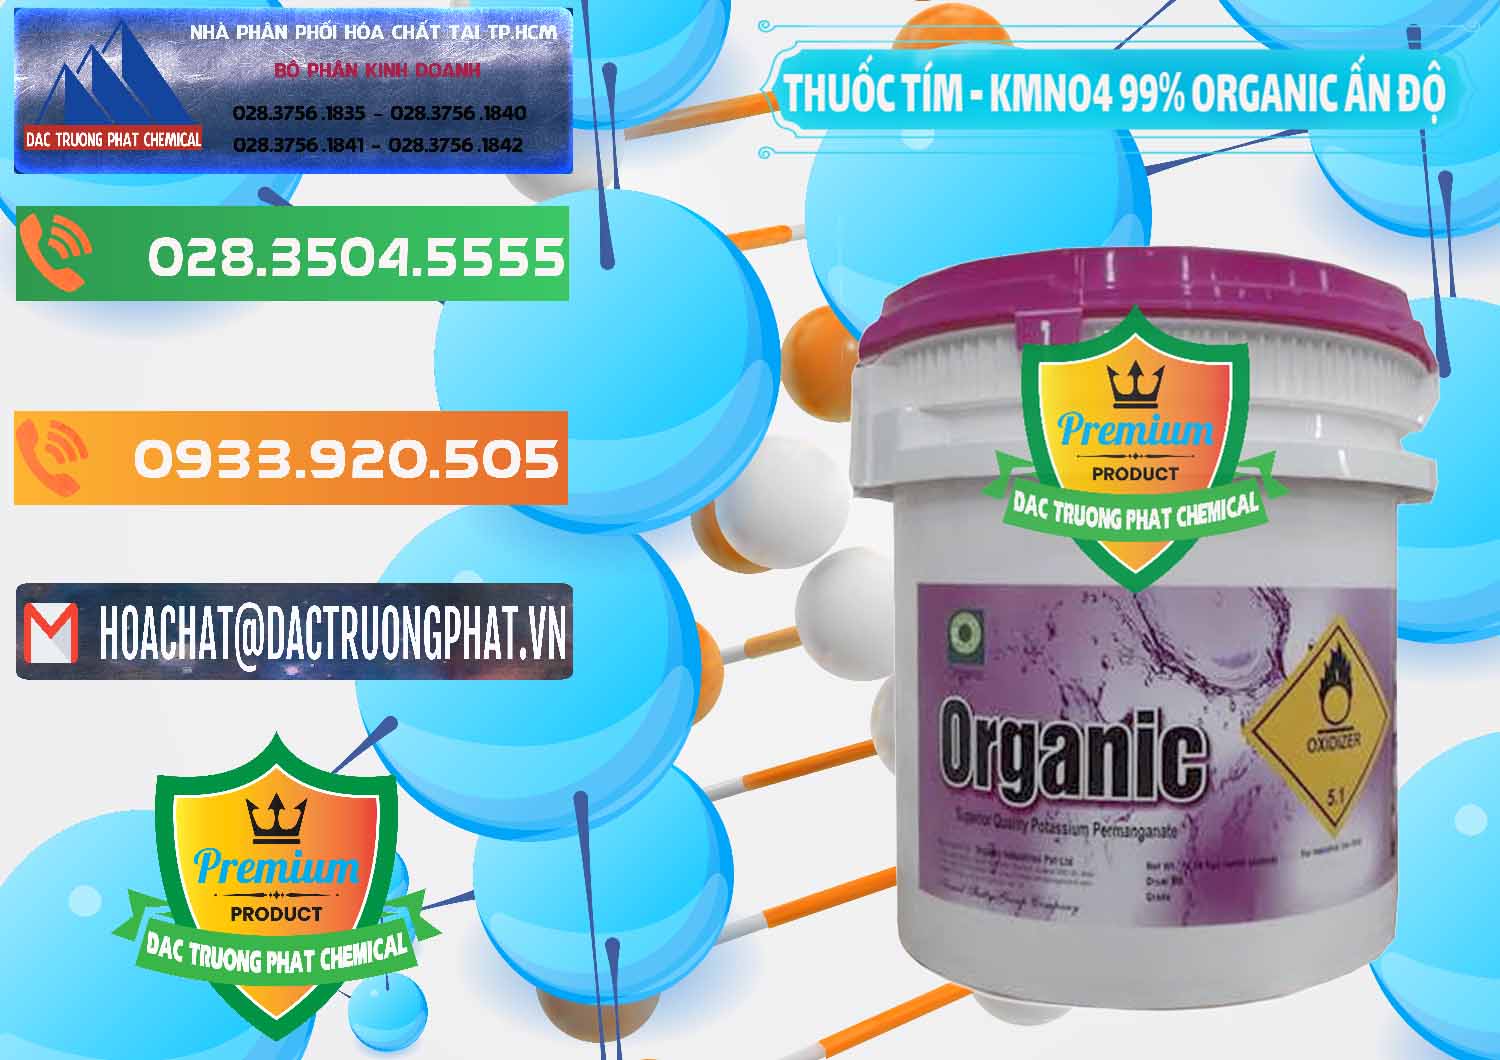 Đơn vị chuyên kinh doanh _ bán Thuốc Tím - KMNO4 99% Organic Ấn Độ India - 0216 - Nơi chuyên phân phối và bán hóa chất tại TP.HCM - hoachatxulynuoc.com.vn